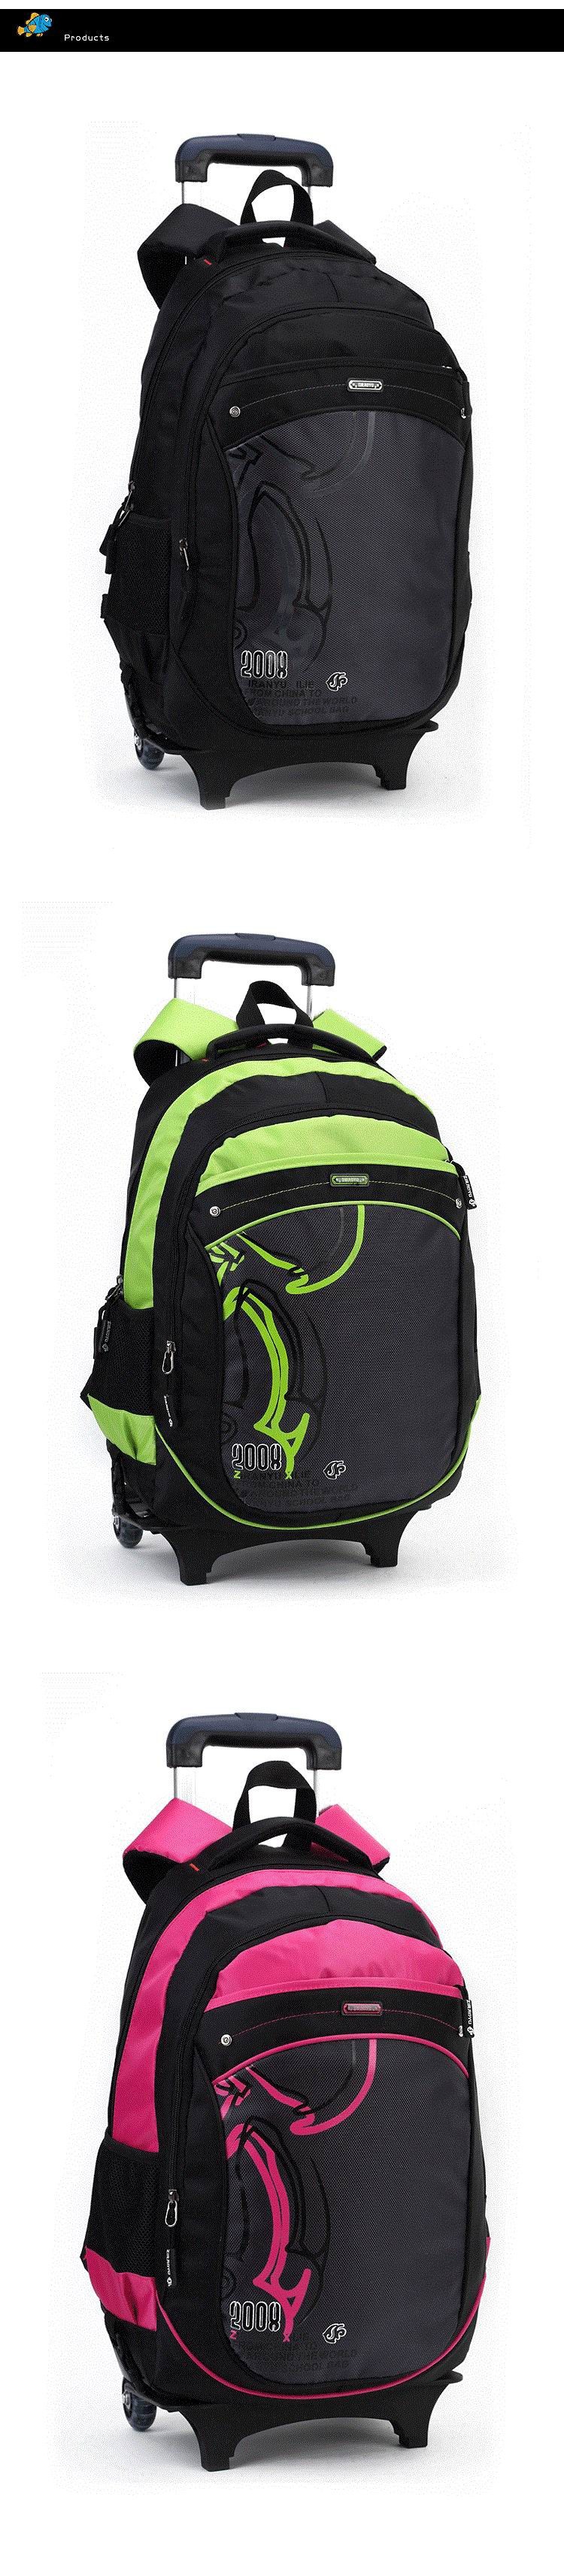 school-trolley-backpack-bag-wheels-backpack-luggage-travel-1